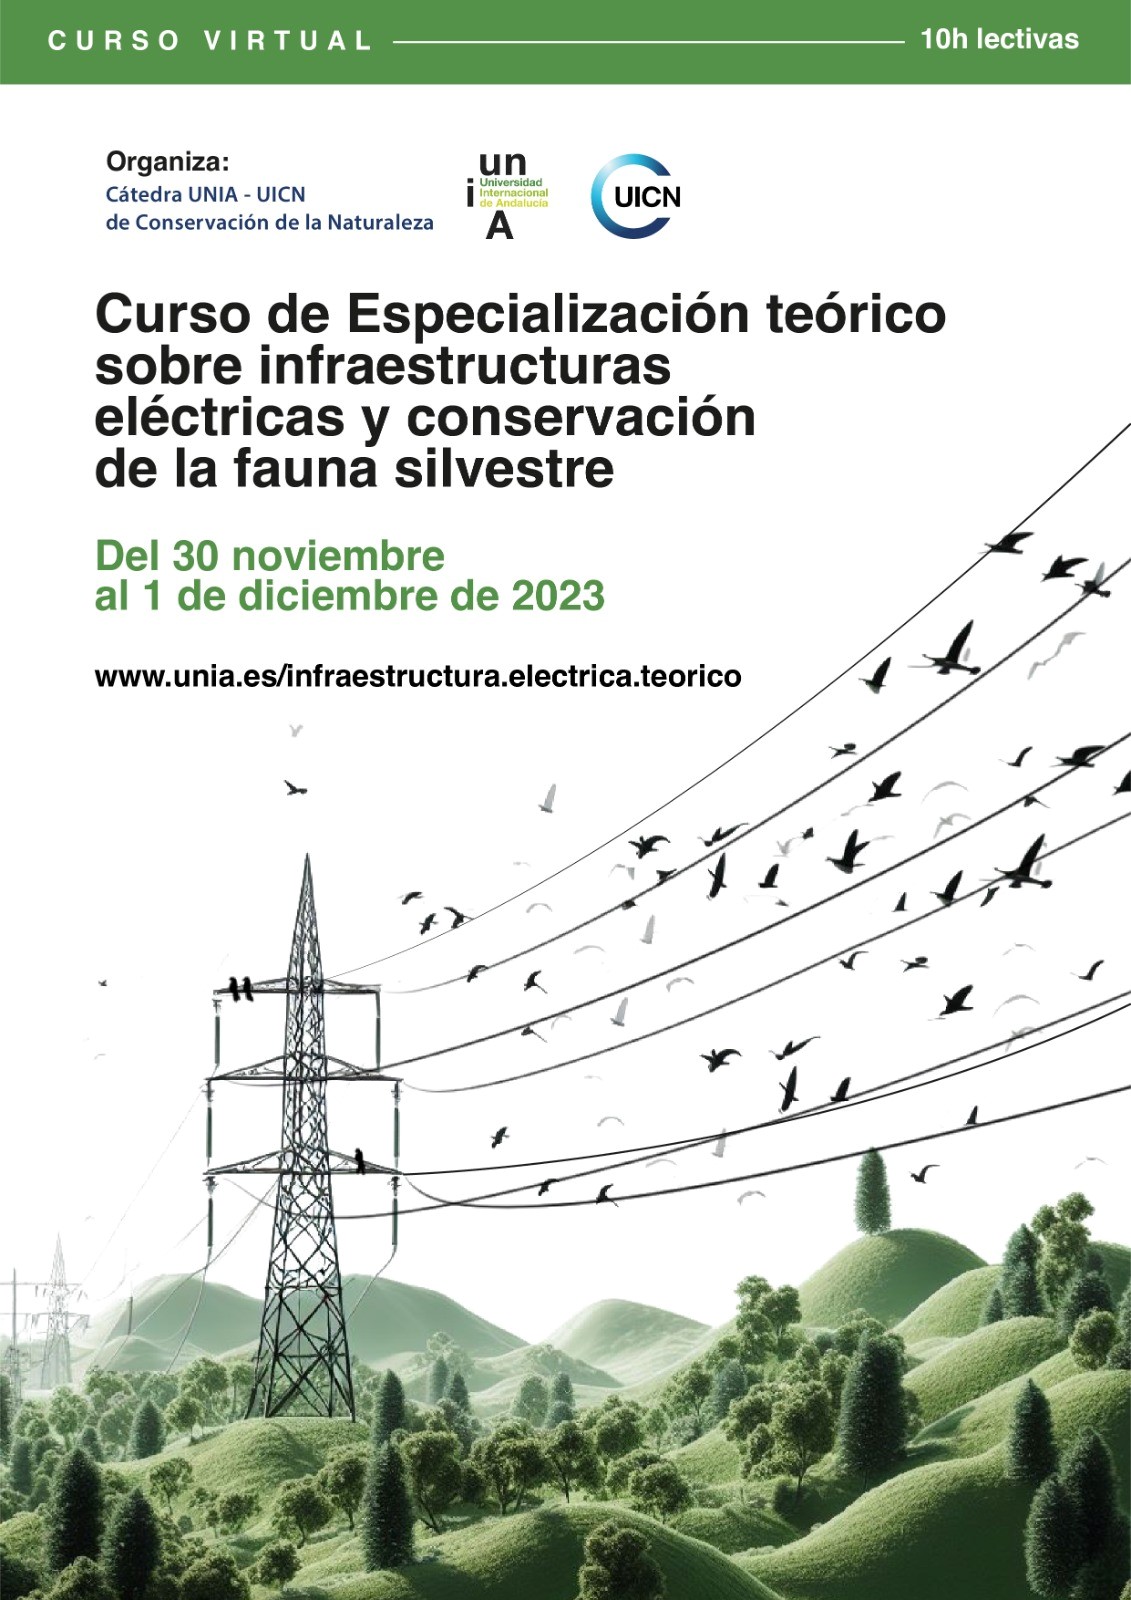 Programa del Curso de especialización teórico sobre infraestructuras eléctricas